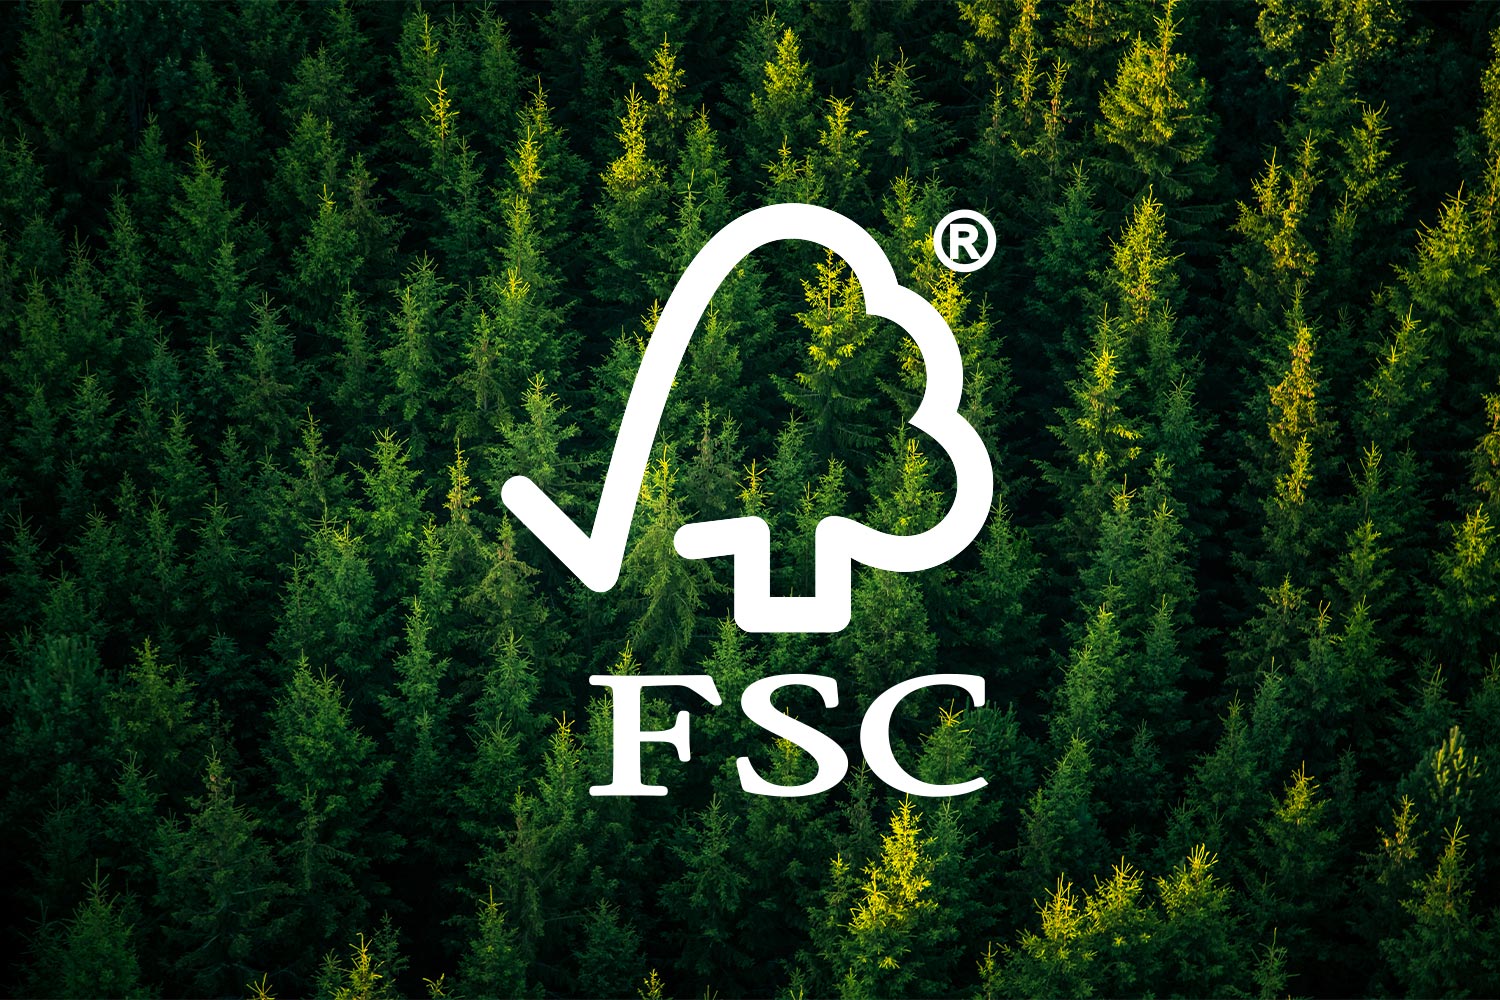 Le FSC (Forest Stewardship Council)